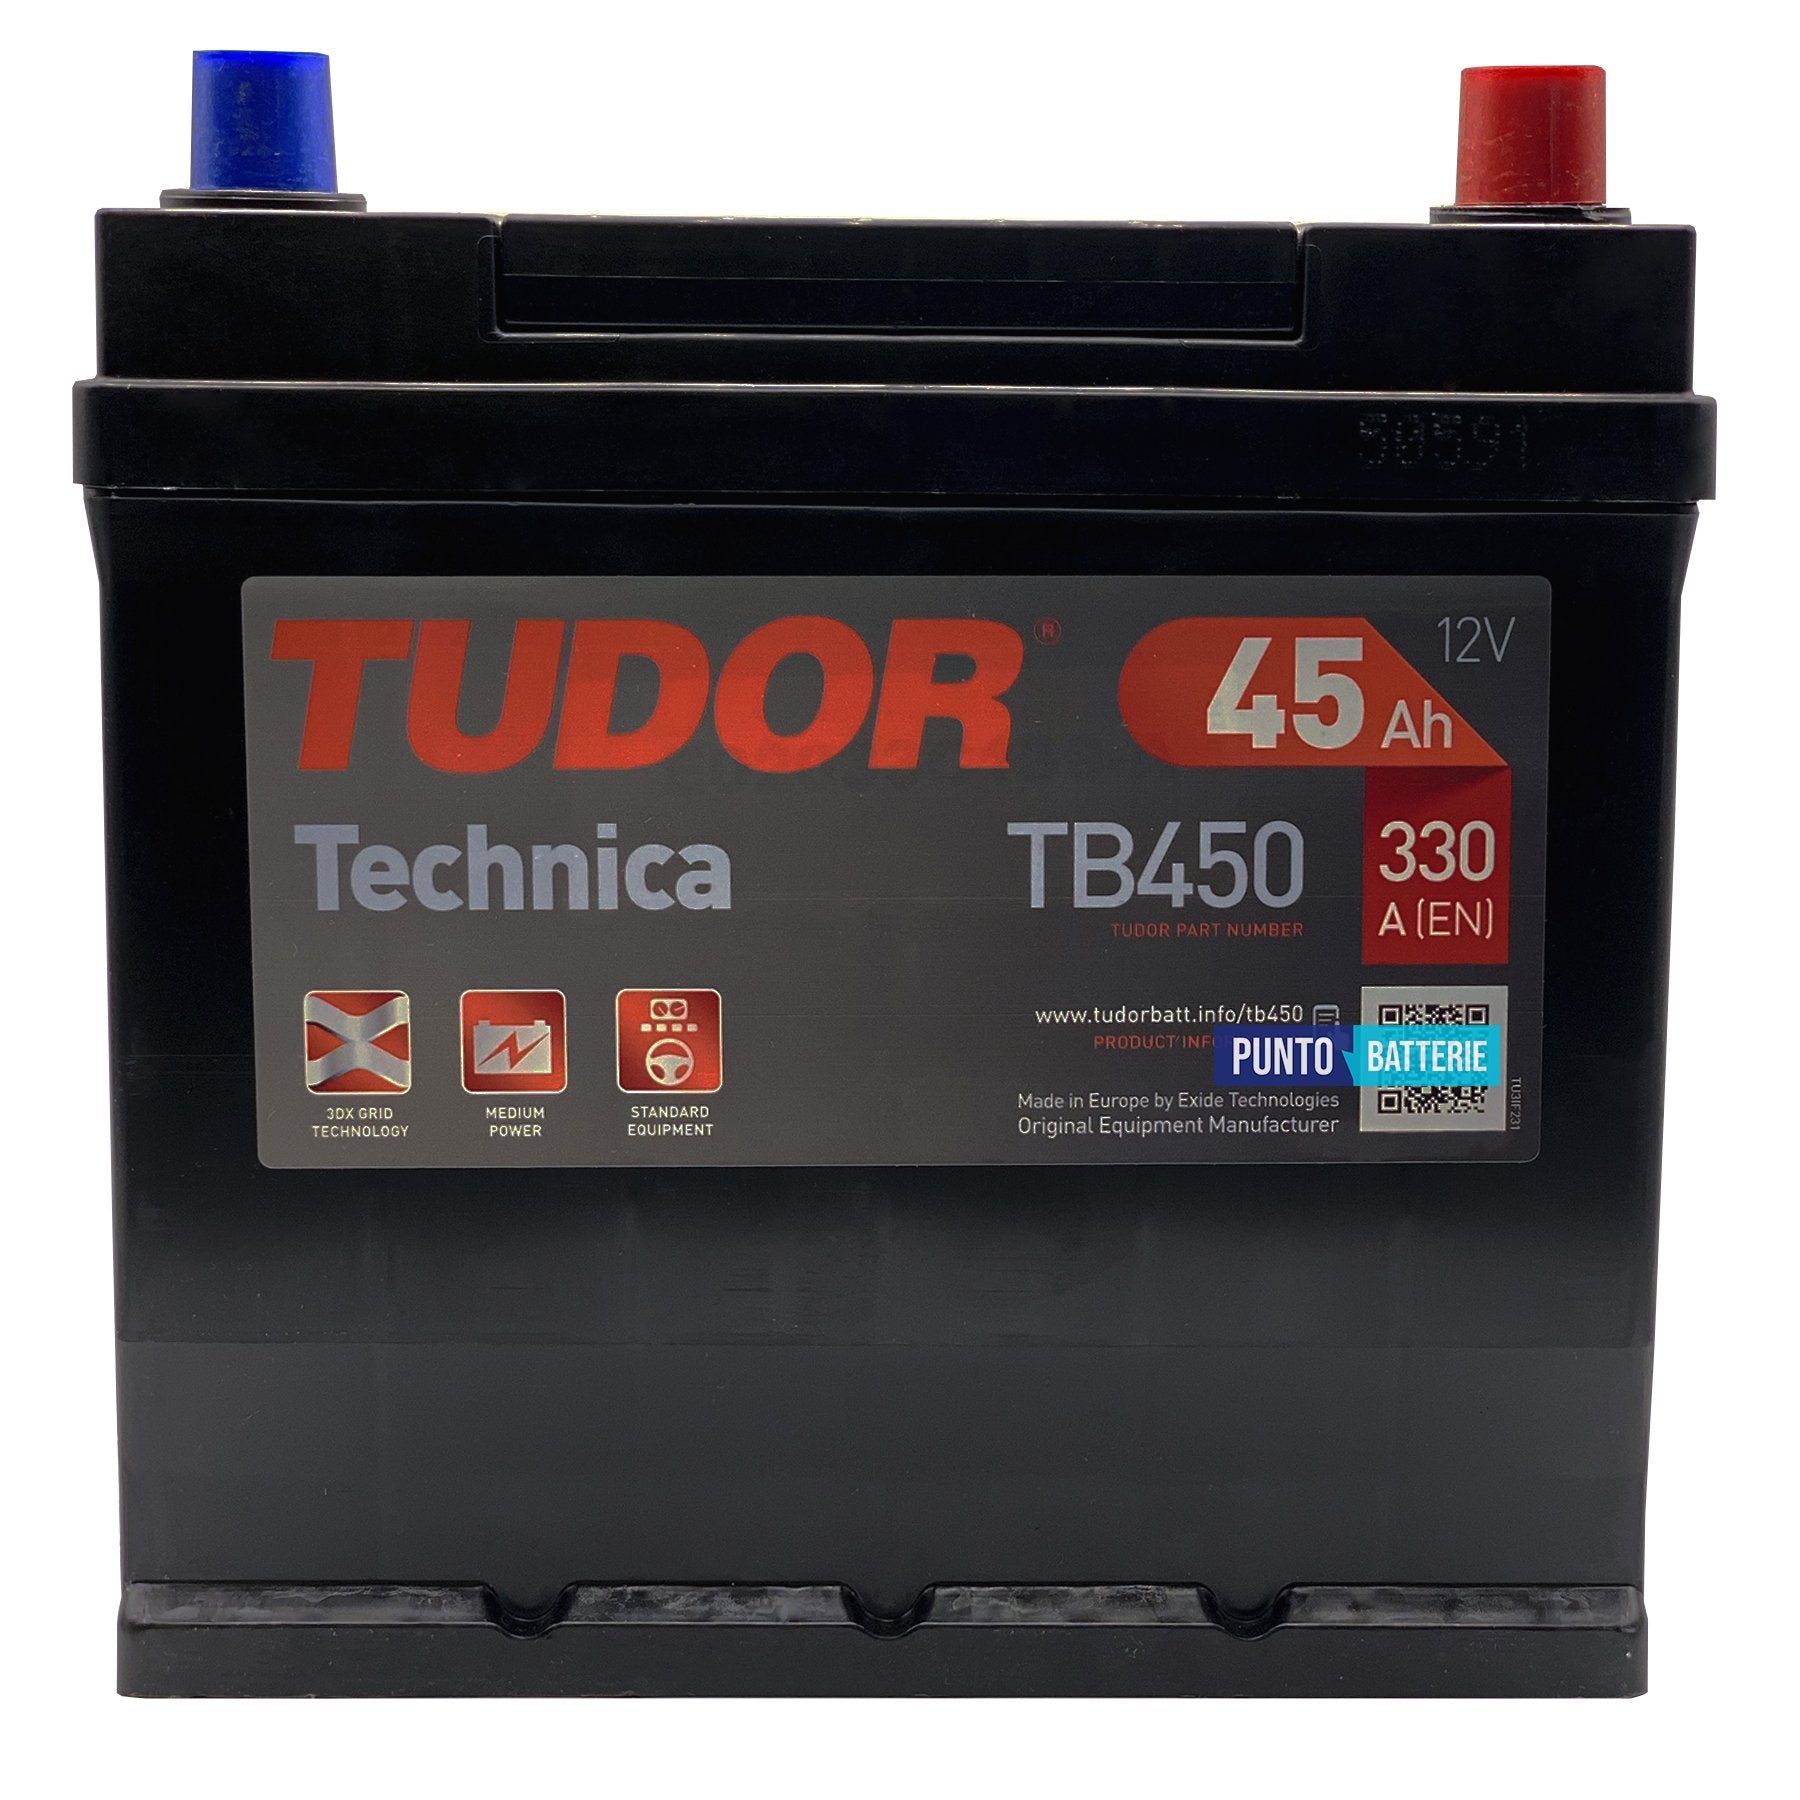 Batteria Tudor 45Ah, 12V, 330A, 220x135x225mm